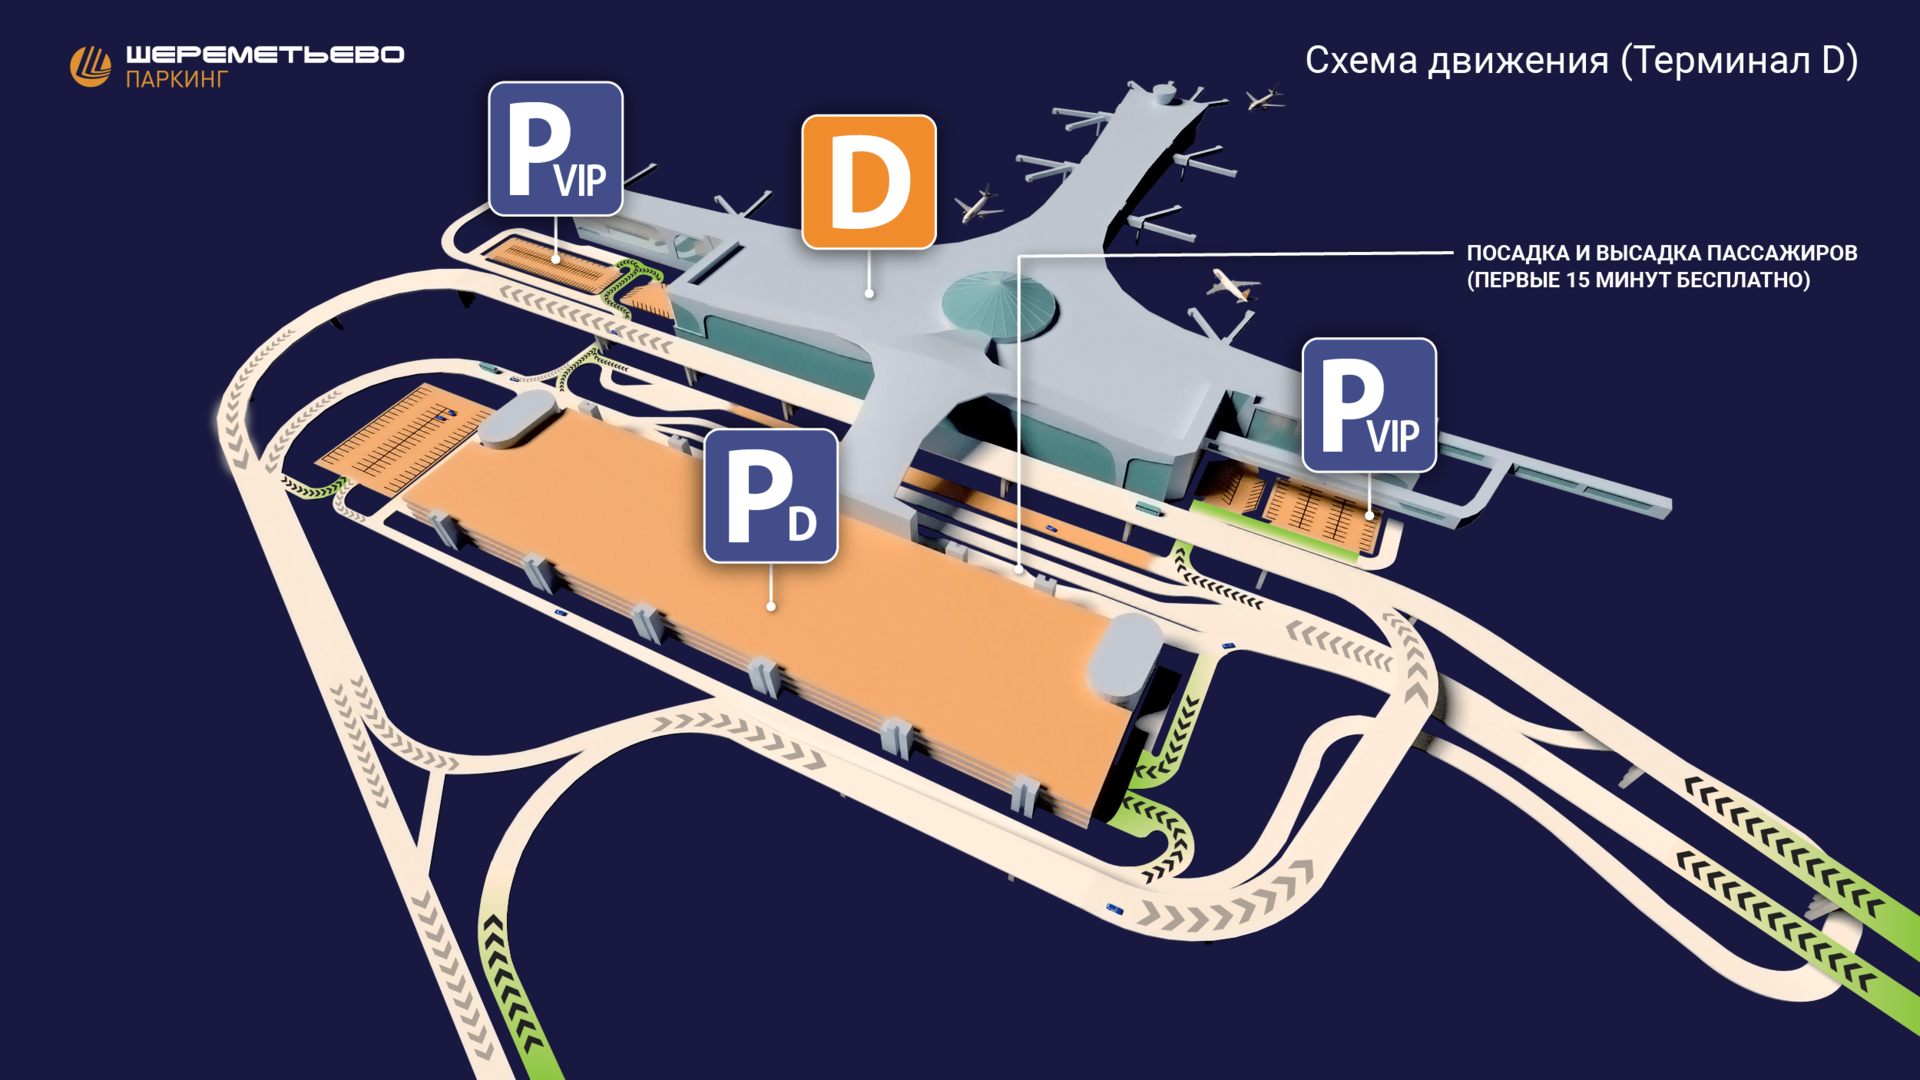 Vip и бизнес залы в терминалах шереметьево - обзор услуг аэропорта